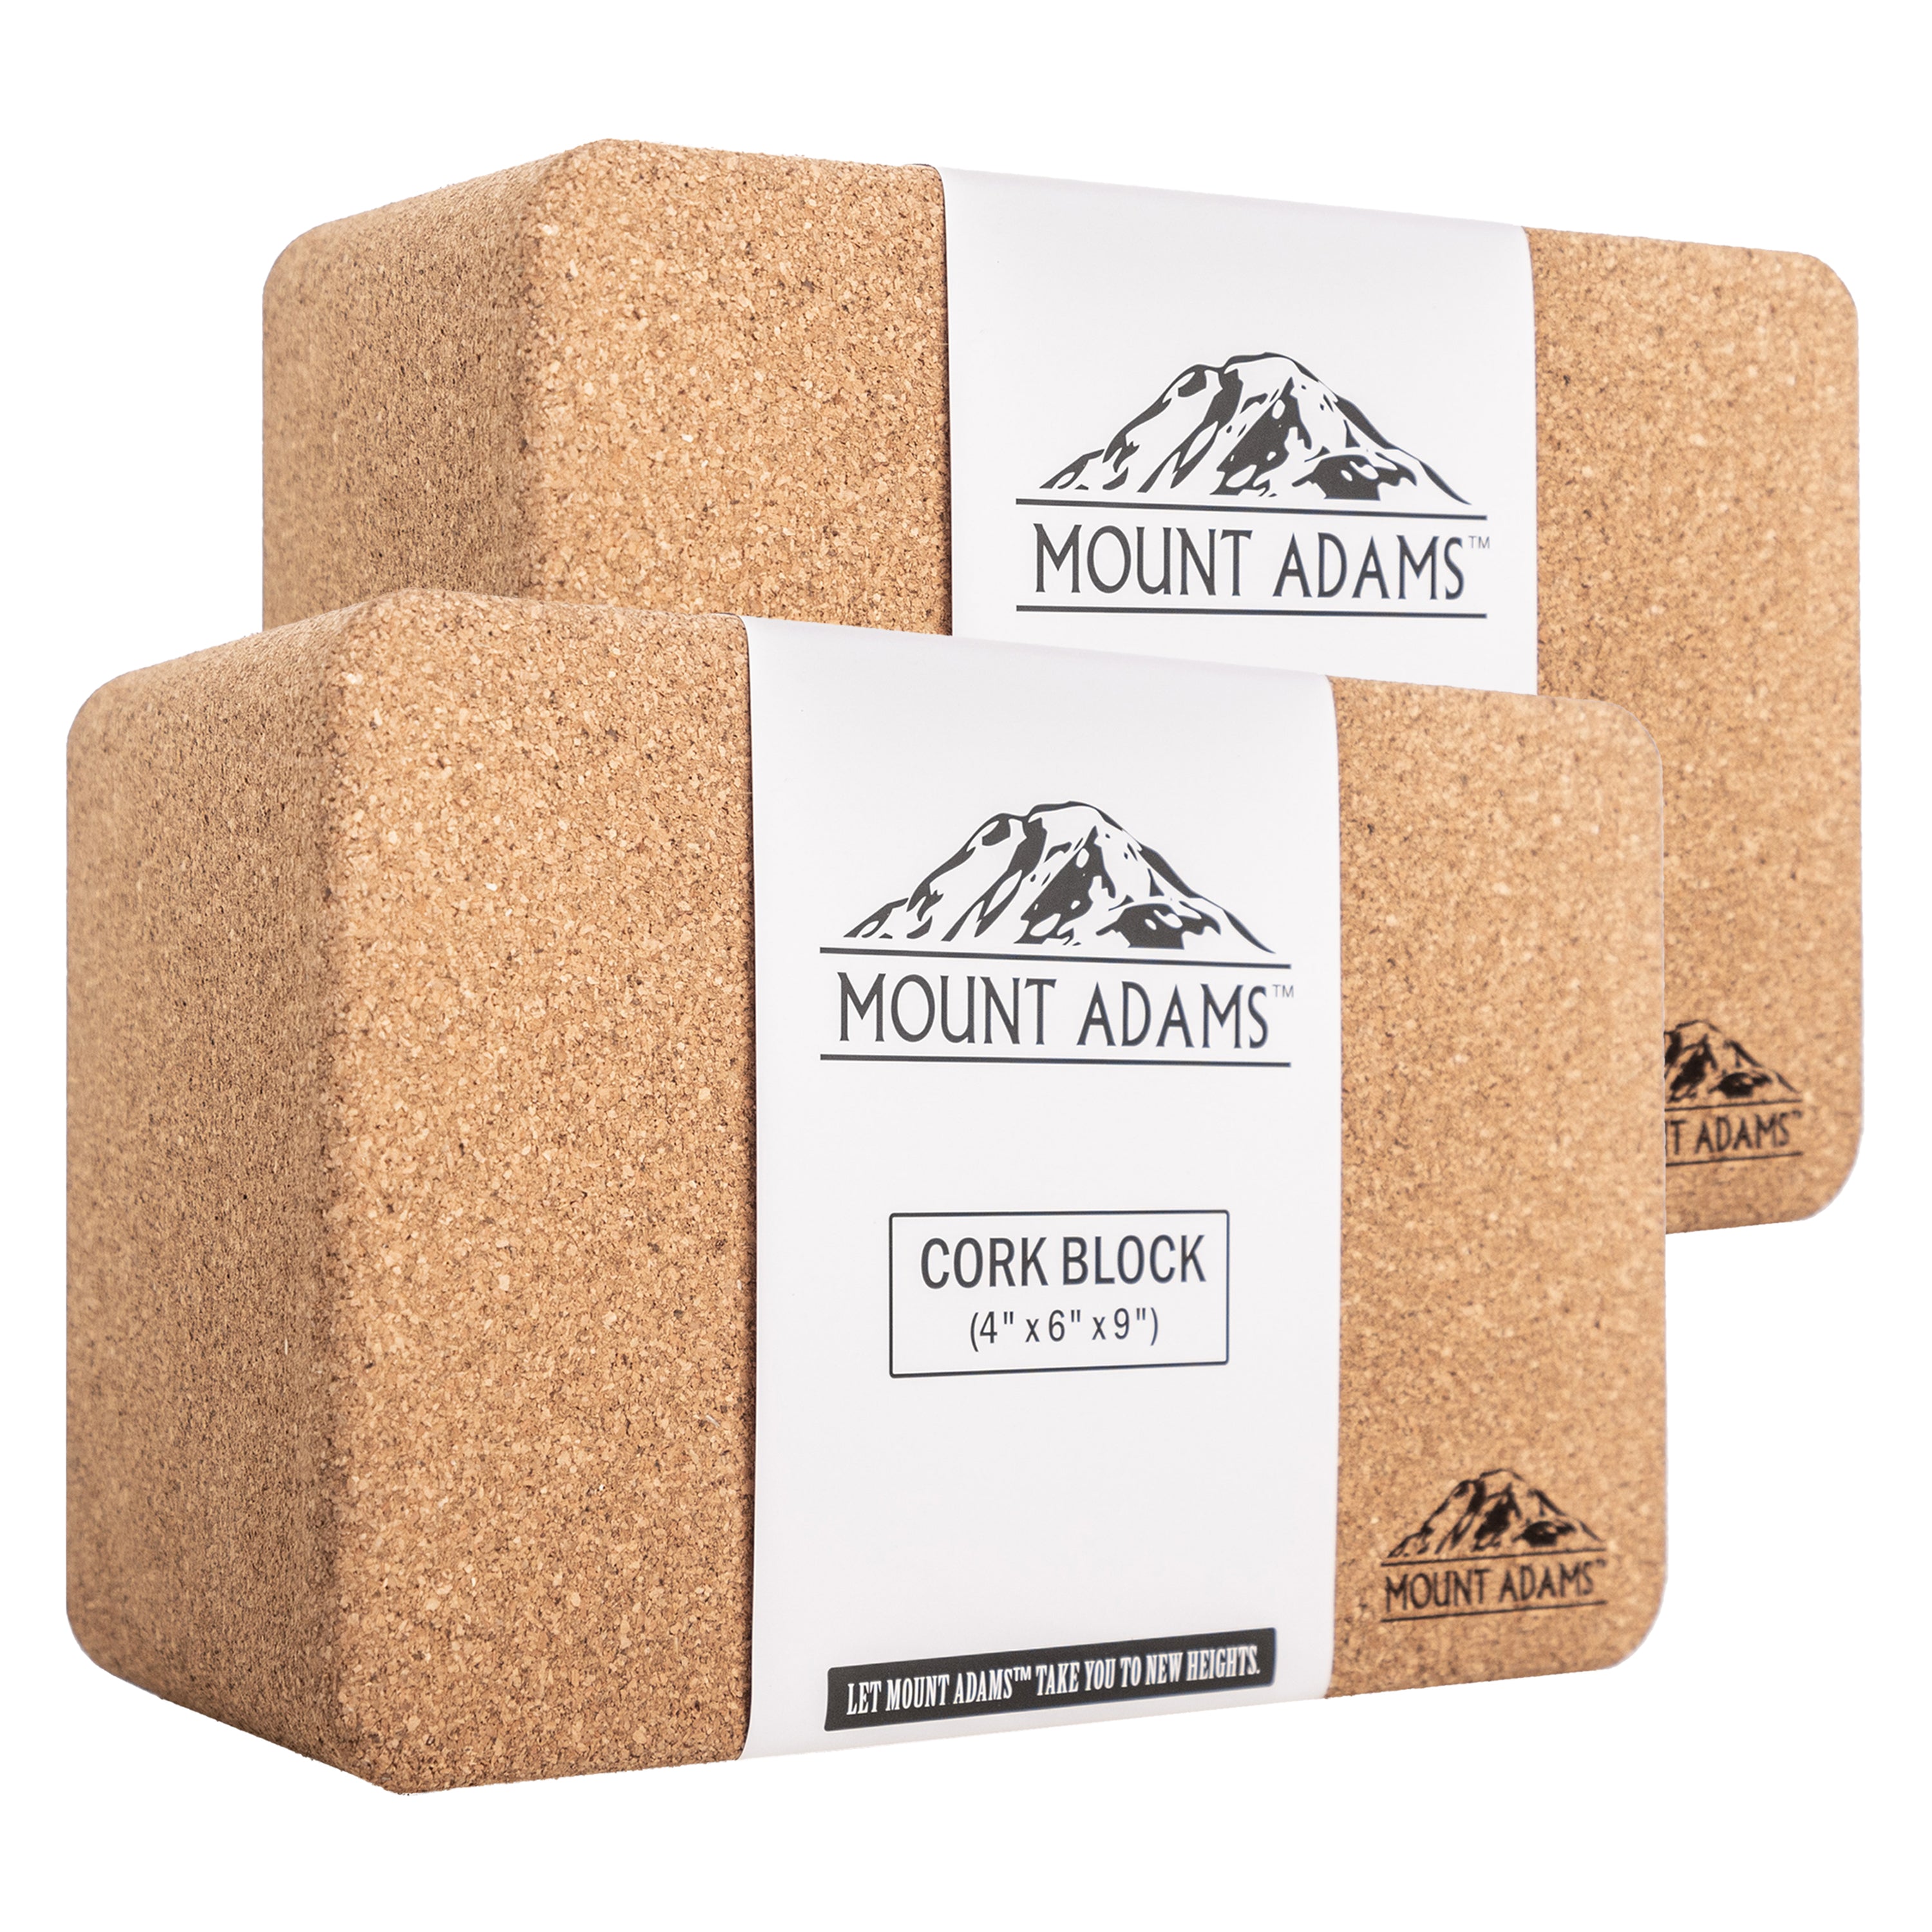 Mount Adams 4” Cork Yoga Block